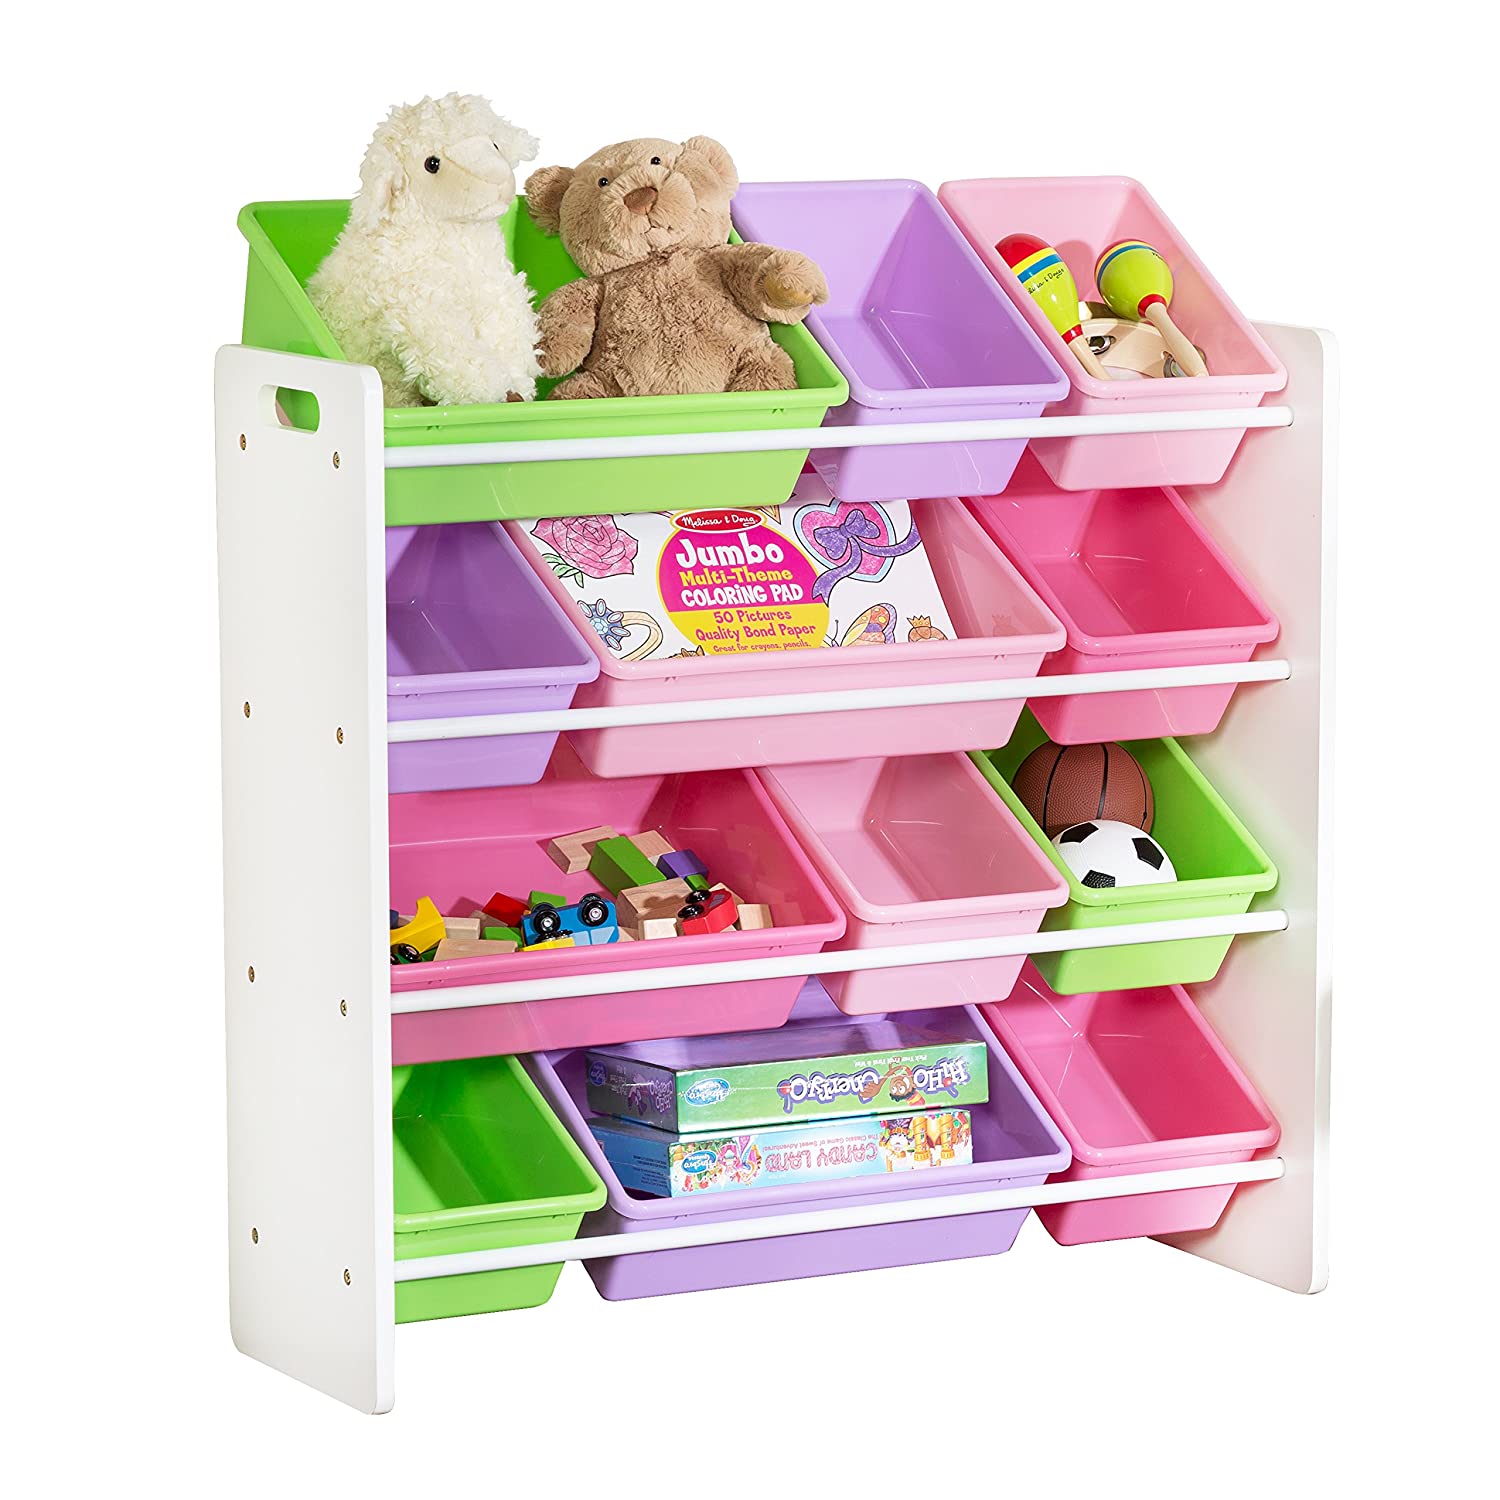 HoneyCanDo SRT-01603 Kids Toy Storage Organizer with Bins, Pastel11. 